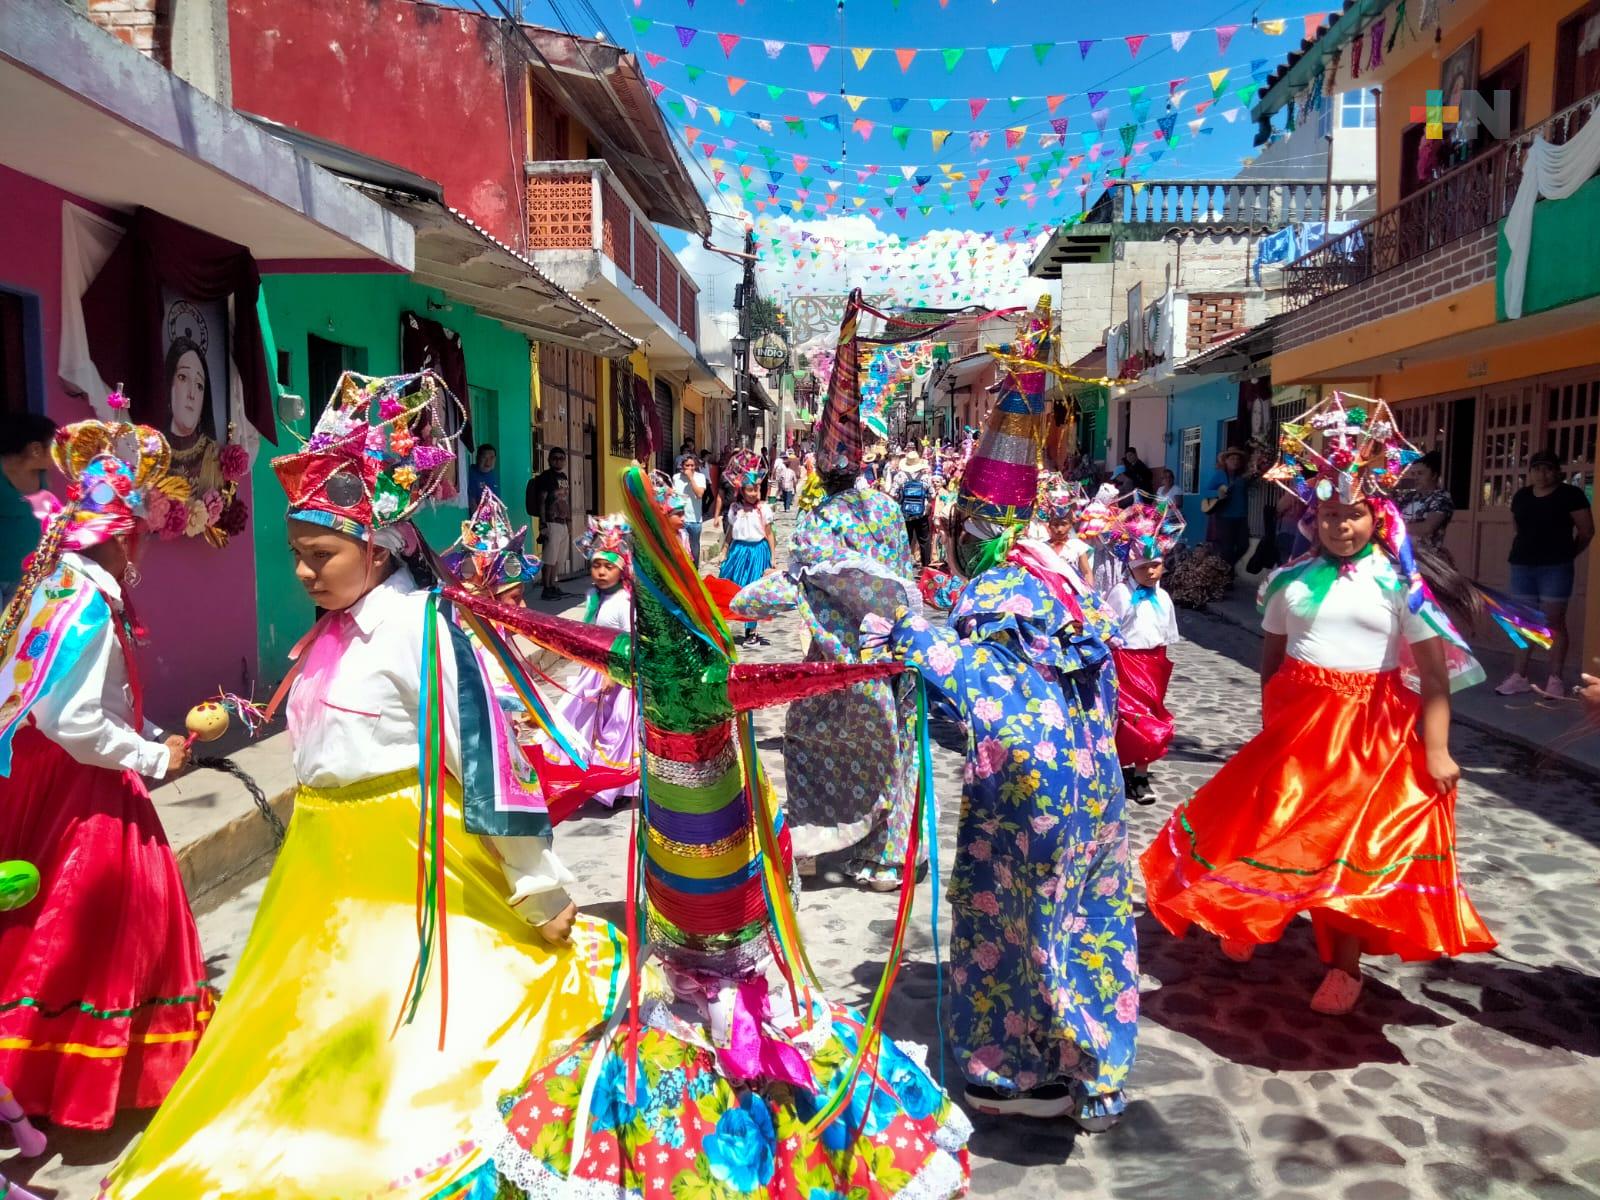 Danzas tradicionales de Xico abrieron paso a procesión del arco floral